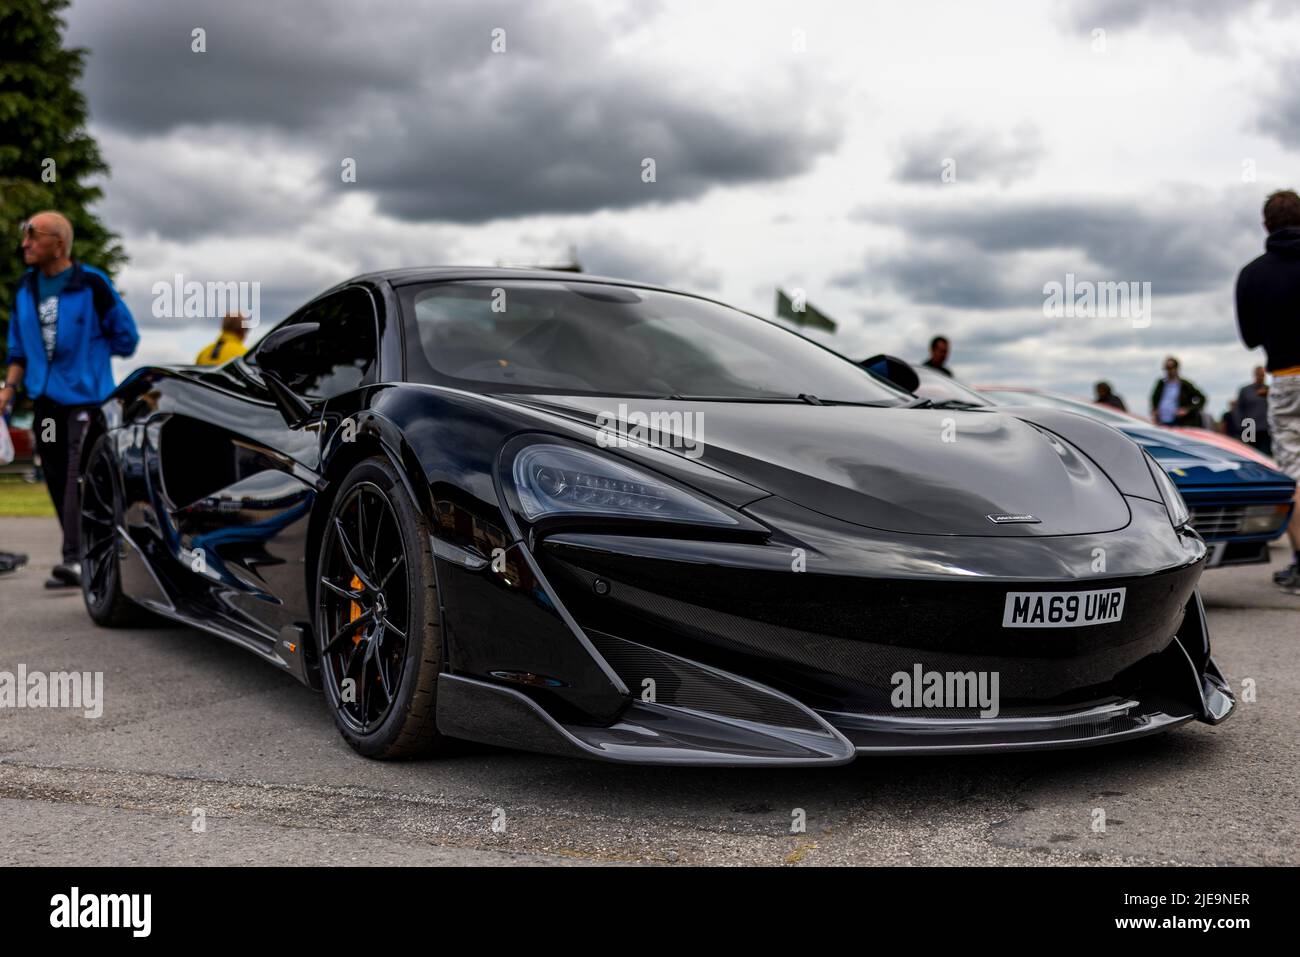 2019 McLaren 600LT ‘M A69 UWR’ exposées au Bicester Scramble le 19th juin 2022 Banque D'Images